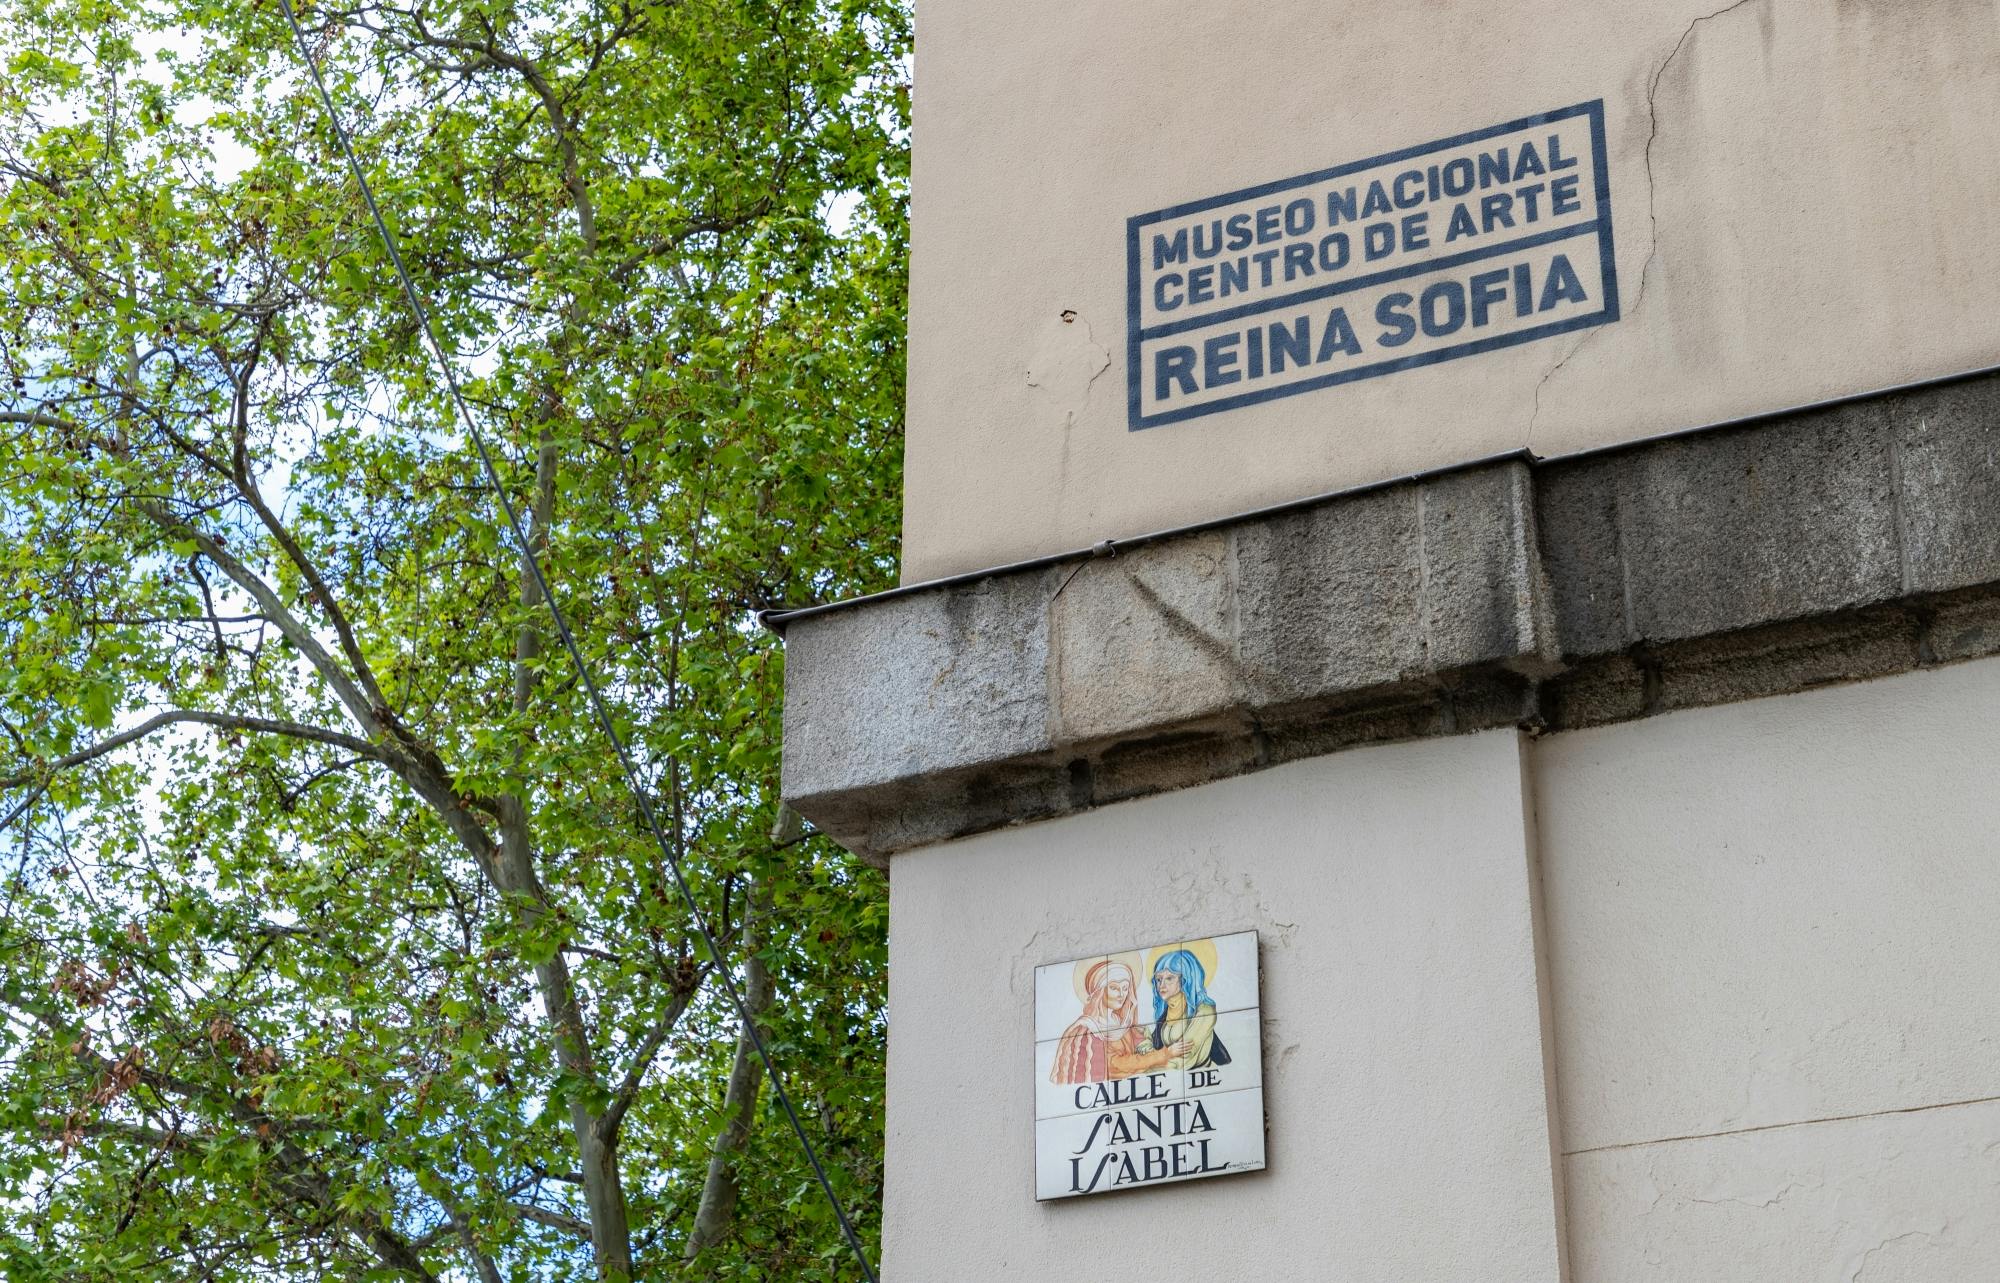 Führung durch Picasso und Guernica im Museum Reina Sofía